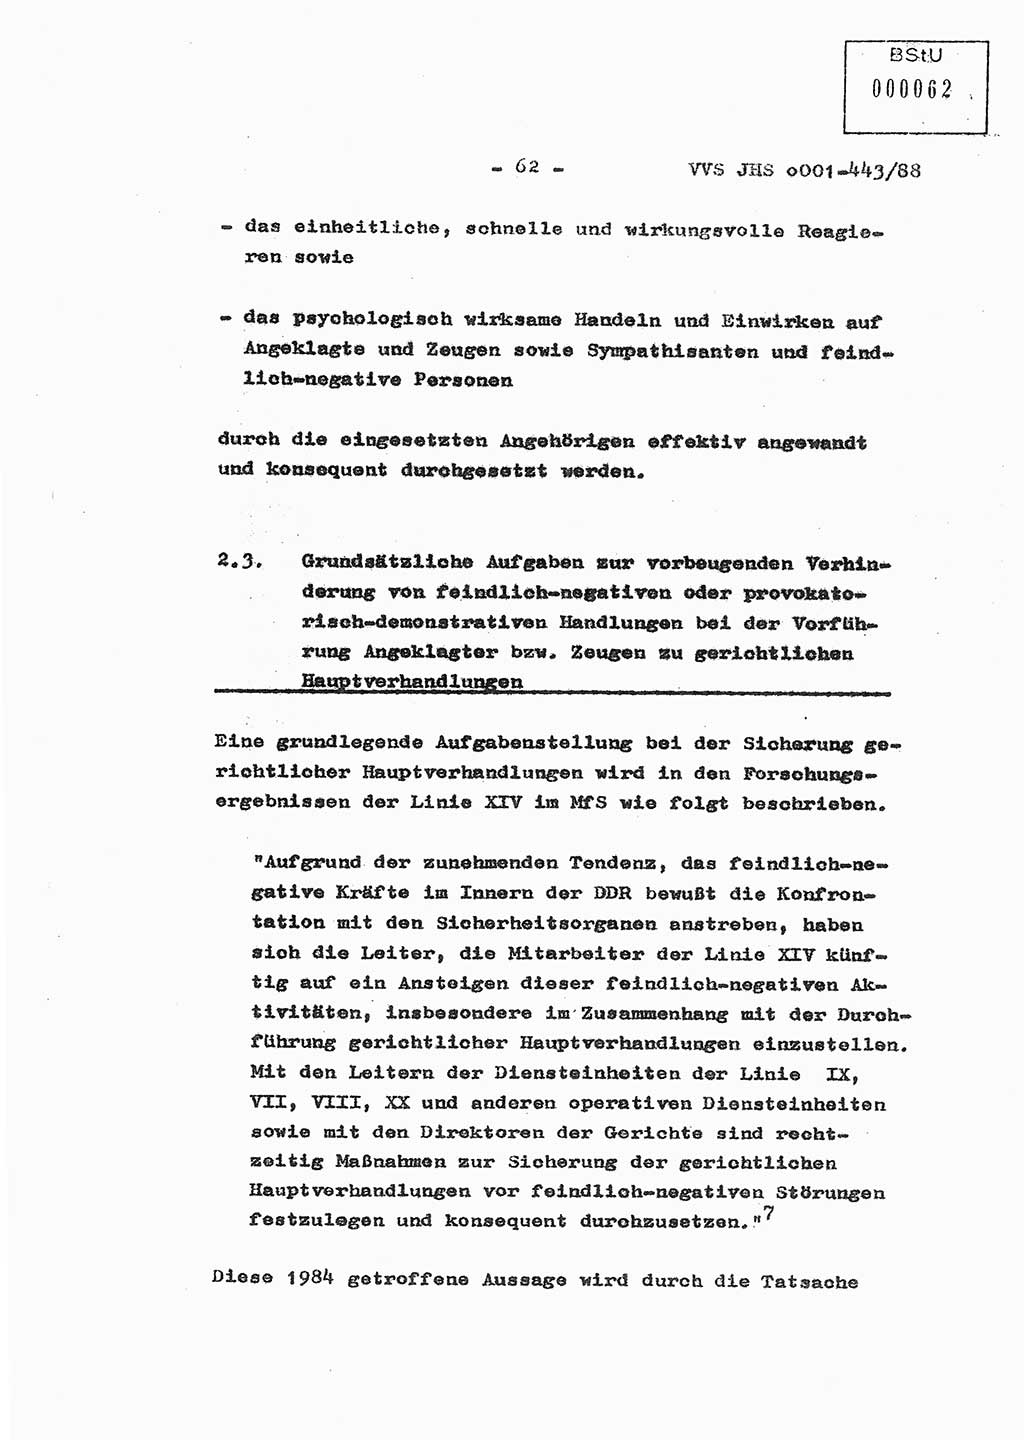 Diplomarbeit Hauptmann Michael Rast (Abt. ⅩⅣ), Major Bernd Rahaus (Abt. ⅩⅣ), Ministerium für Staatssicherheit (MfS) [Deutsche Demokratische Republik (DDR)], Juristische Hochschule (JHS), Vertrauliche Verschlußsache (VVS) o001-443/88, Potsdam 1988, Seite 62 (Dipl.-Arb. MfS DDR JHS VVS o001-443/88 1988, S. 62)